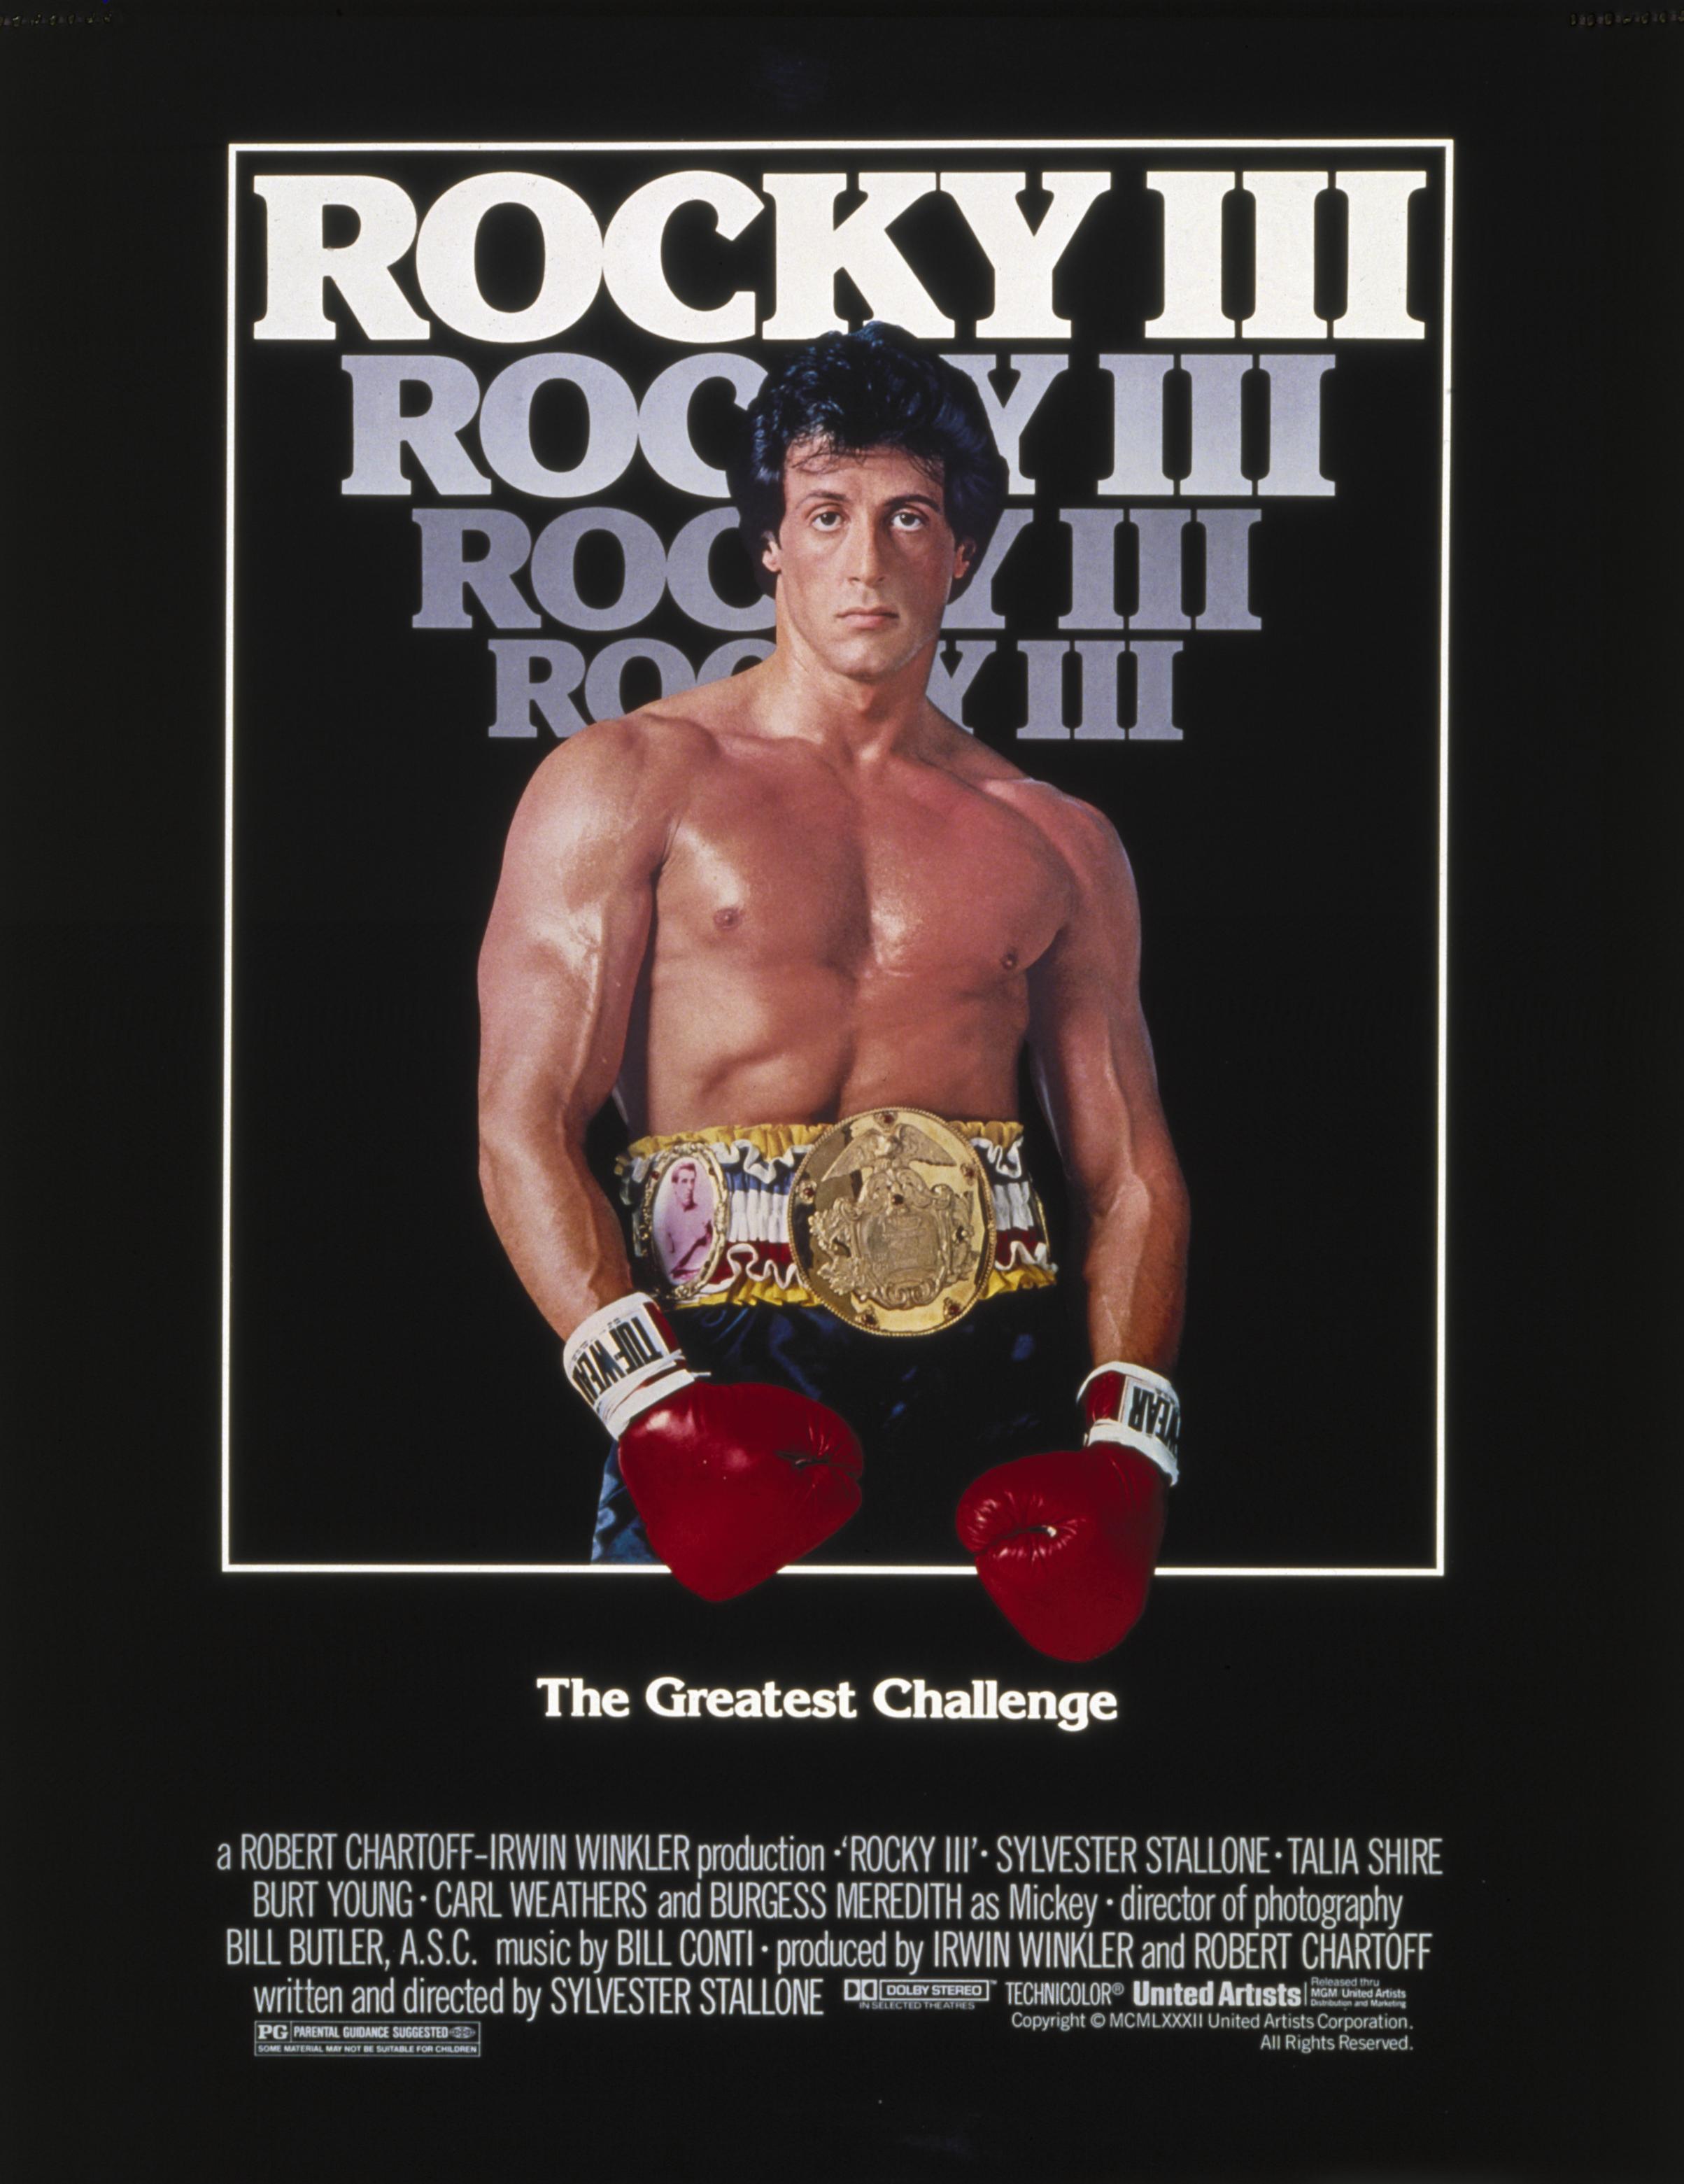 SUMMER OF '82: ROCKY III – FilmBuffOnline